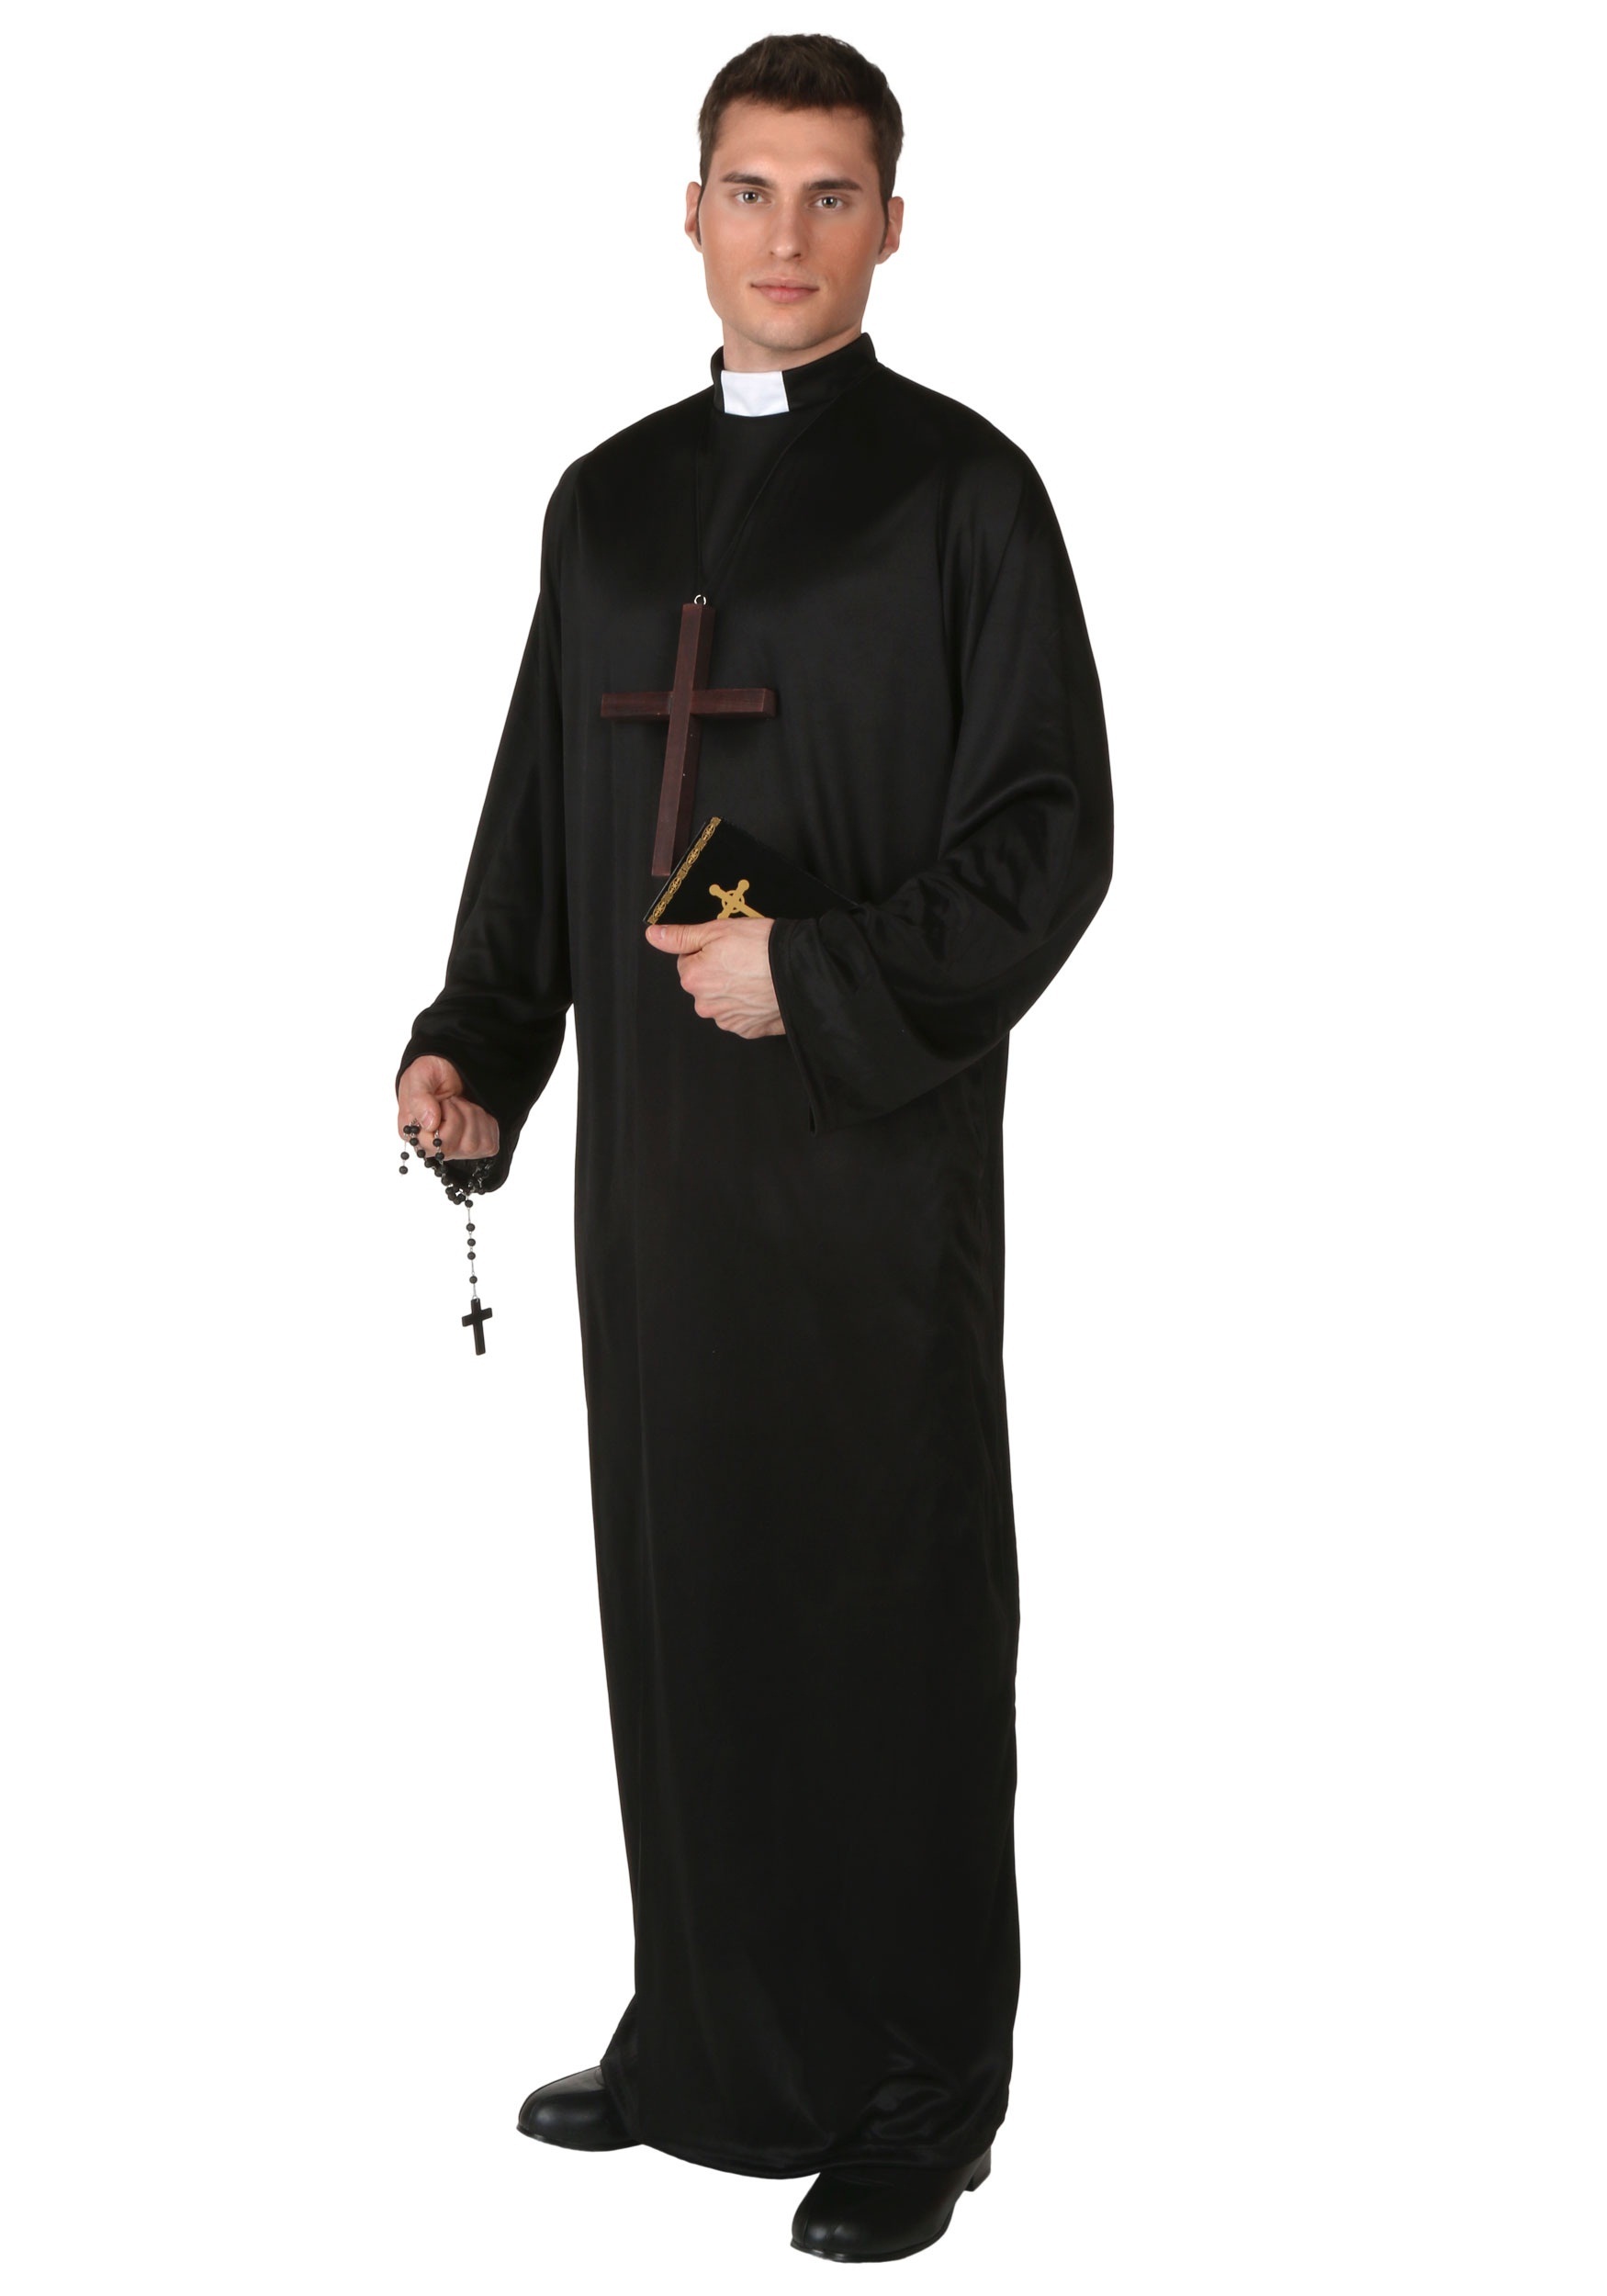 Photos - Fancy Dress FUN Costumes Men's Pious Priest Plus Size Costume Black FUN2920PL